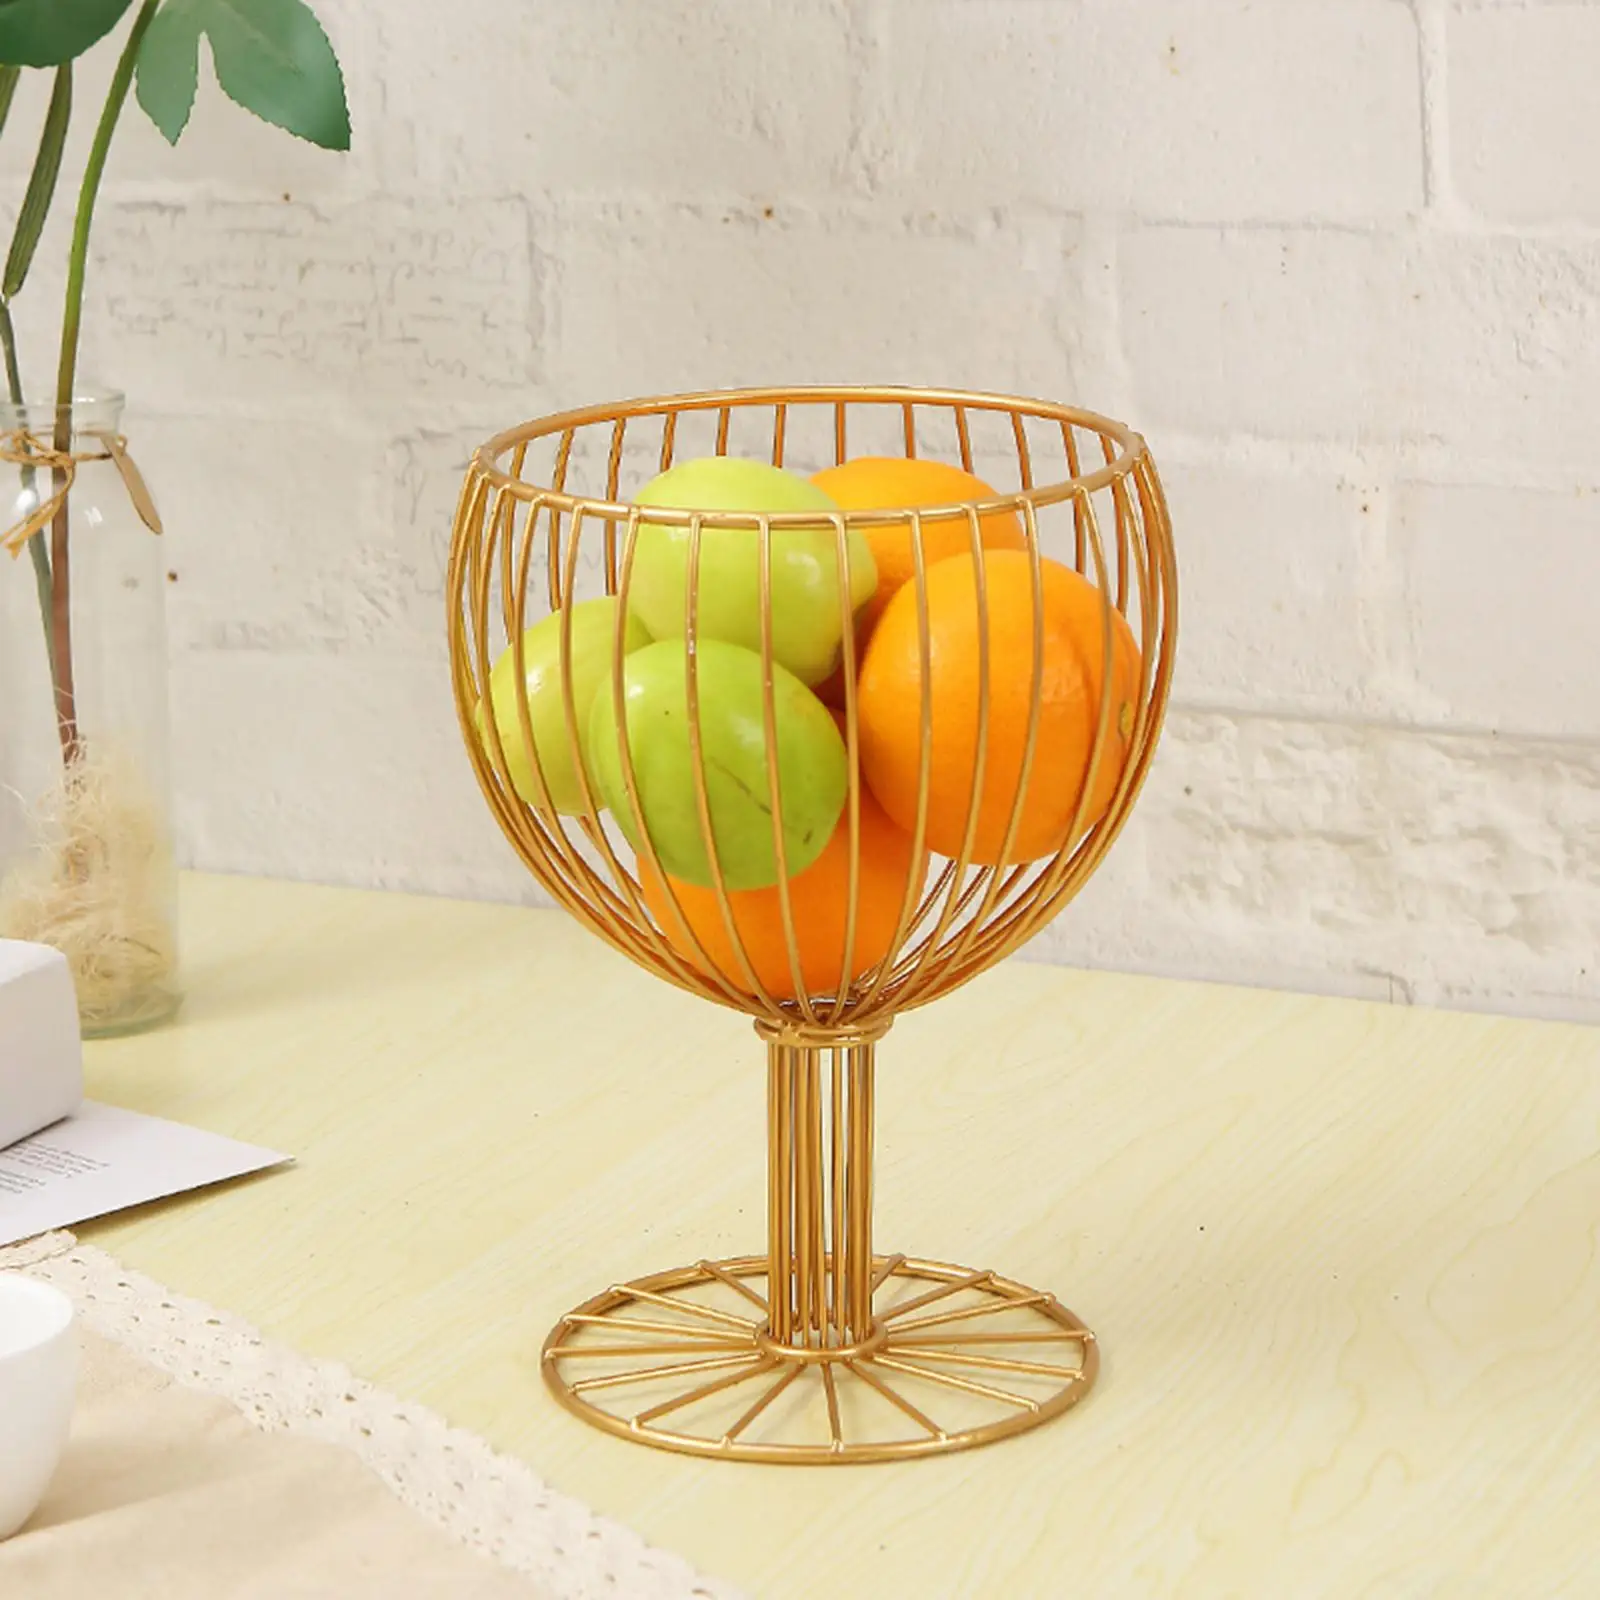 Fruit Basket Bowl Serving Bowl Multipurpose Simple Line for Desktop Home